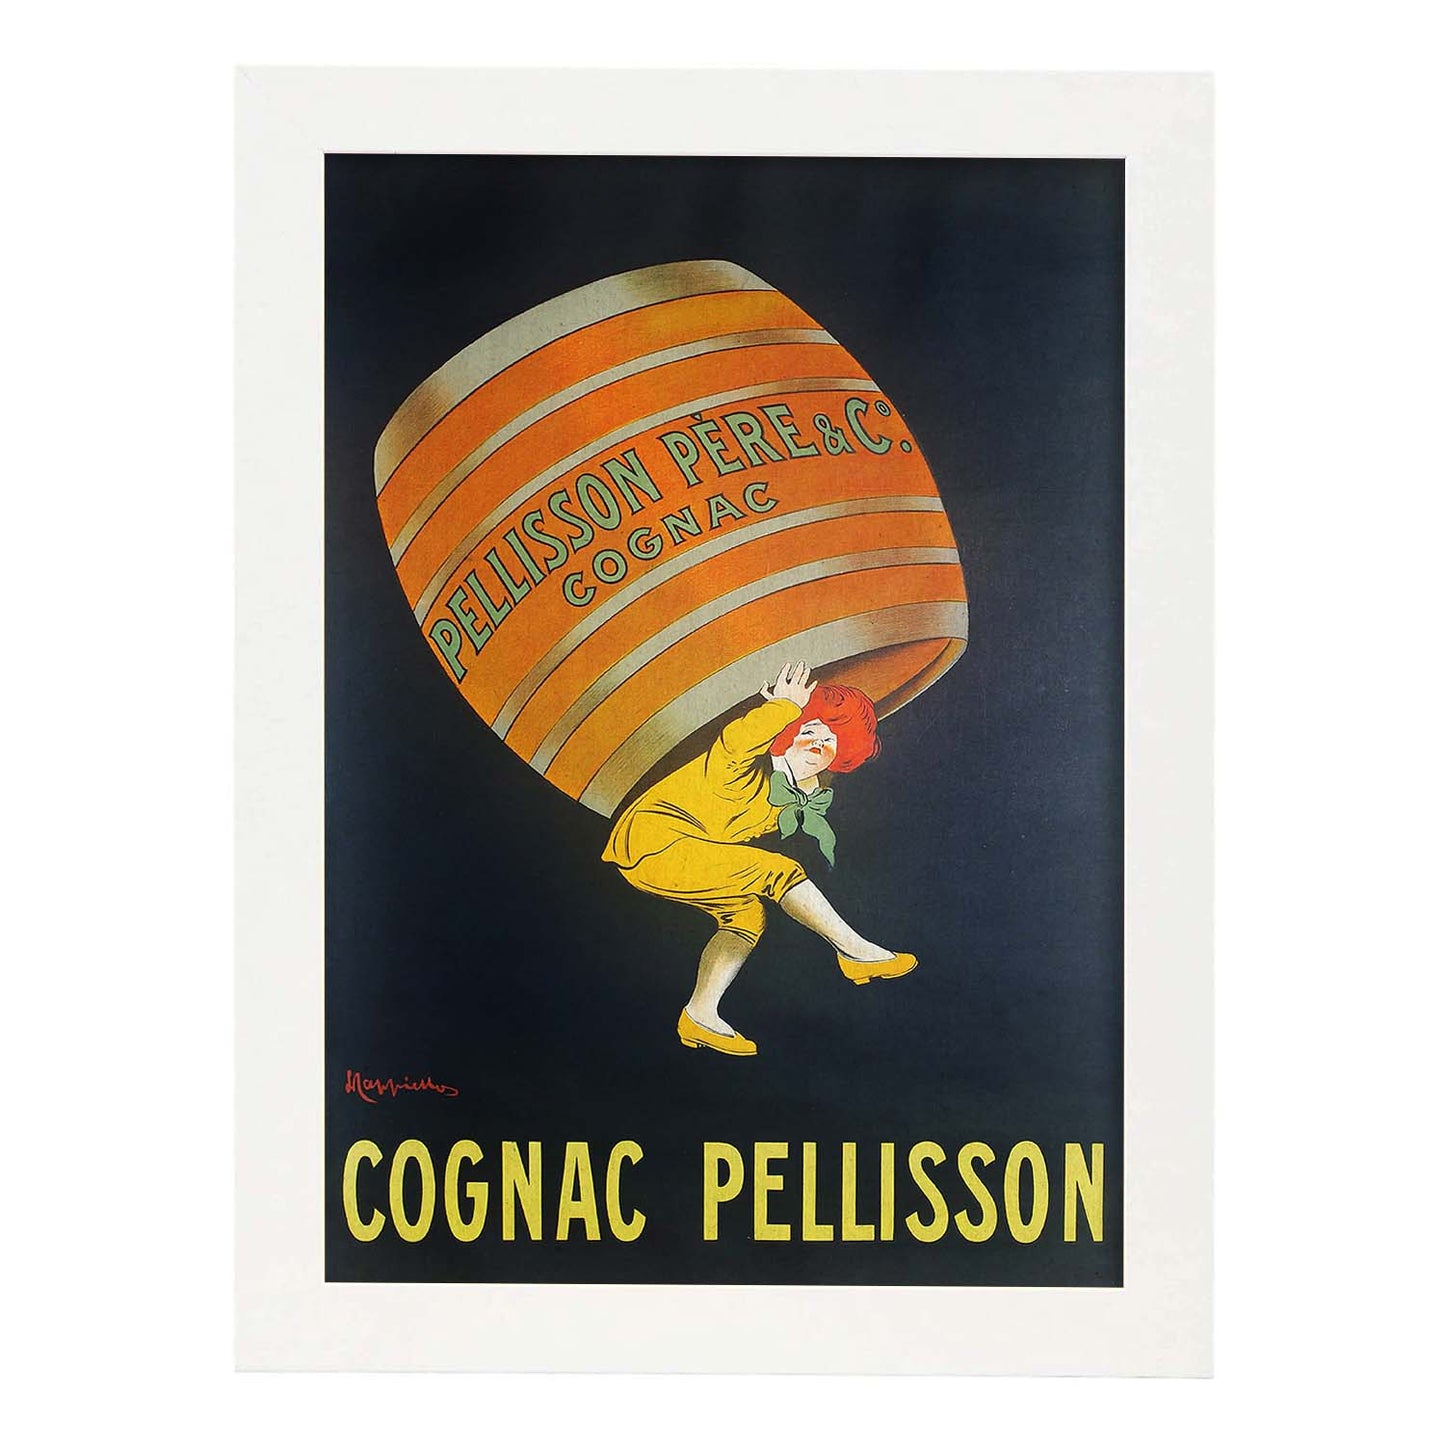 Poster vintage. Anuncio vintage Cognac Pellisson de 1907..-Artwork-Nacnic-A4-Marco Blanco-Nacnic Estudio SL